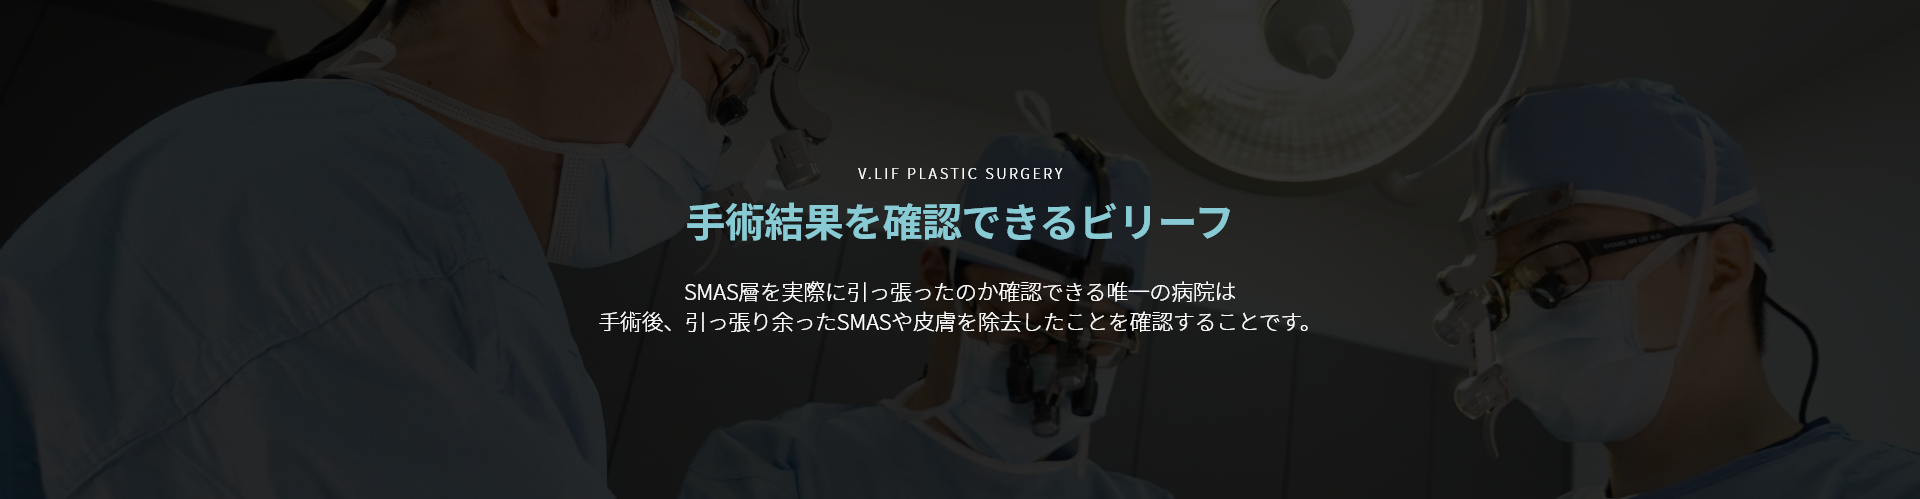 V.LIF PLASTIC SURGERY 수술결과를 확인 할 수 있는 빌리프 스마스층을 실제로 당겼는지 확인 할 수 있는 유일한 방법은 수술 후 당기고 남은 스마스 및 피부를 삭제한 것을 확인하는 것입니다.